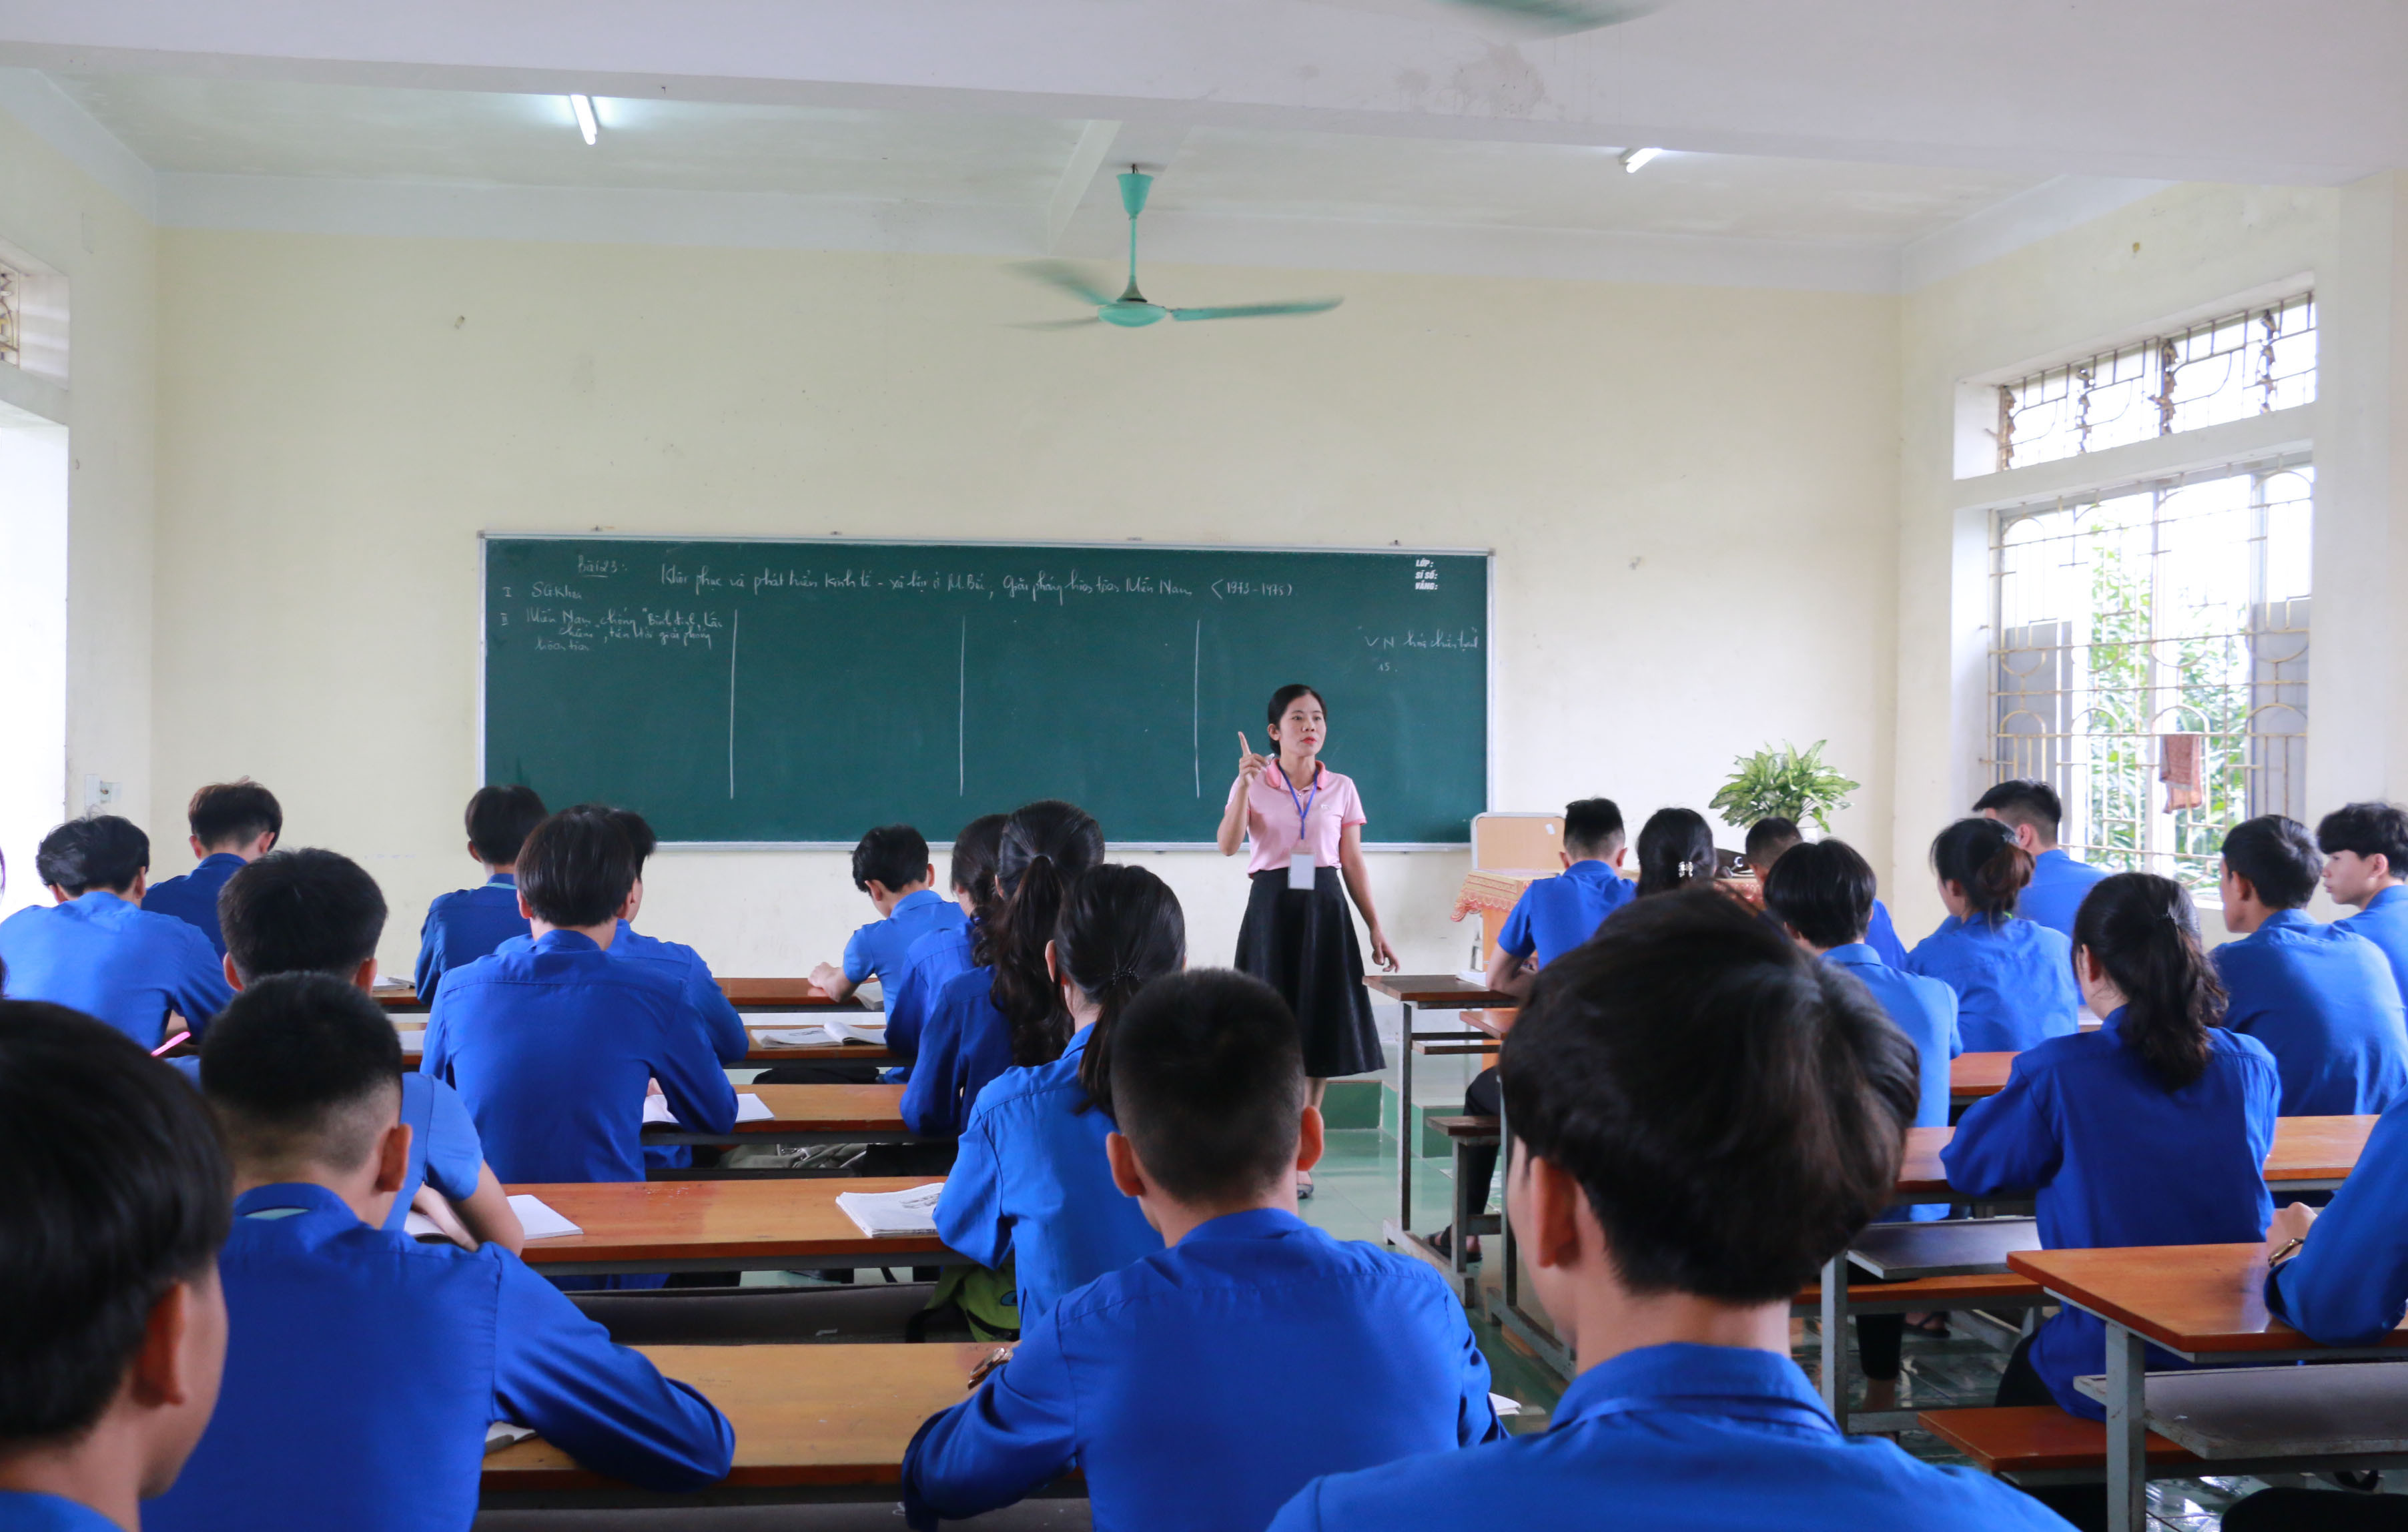 Tiết ôn tập của học sinh lớp 12 - Trường Trung cấp Kinh tế - Kỹ thuật Hồng Lam. Ảnh: MH.